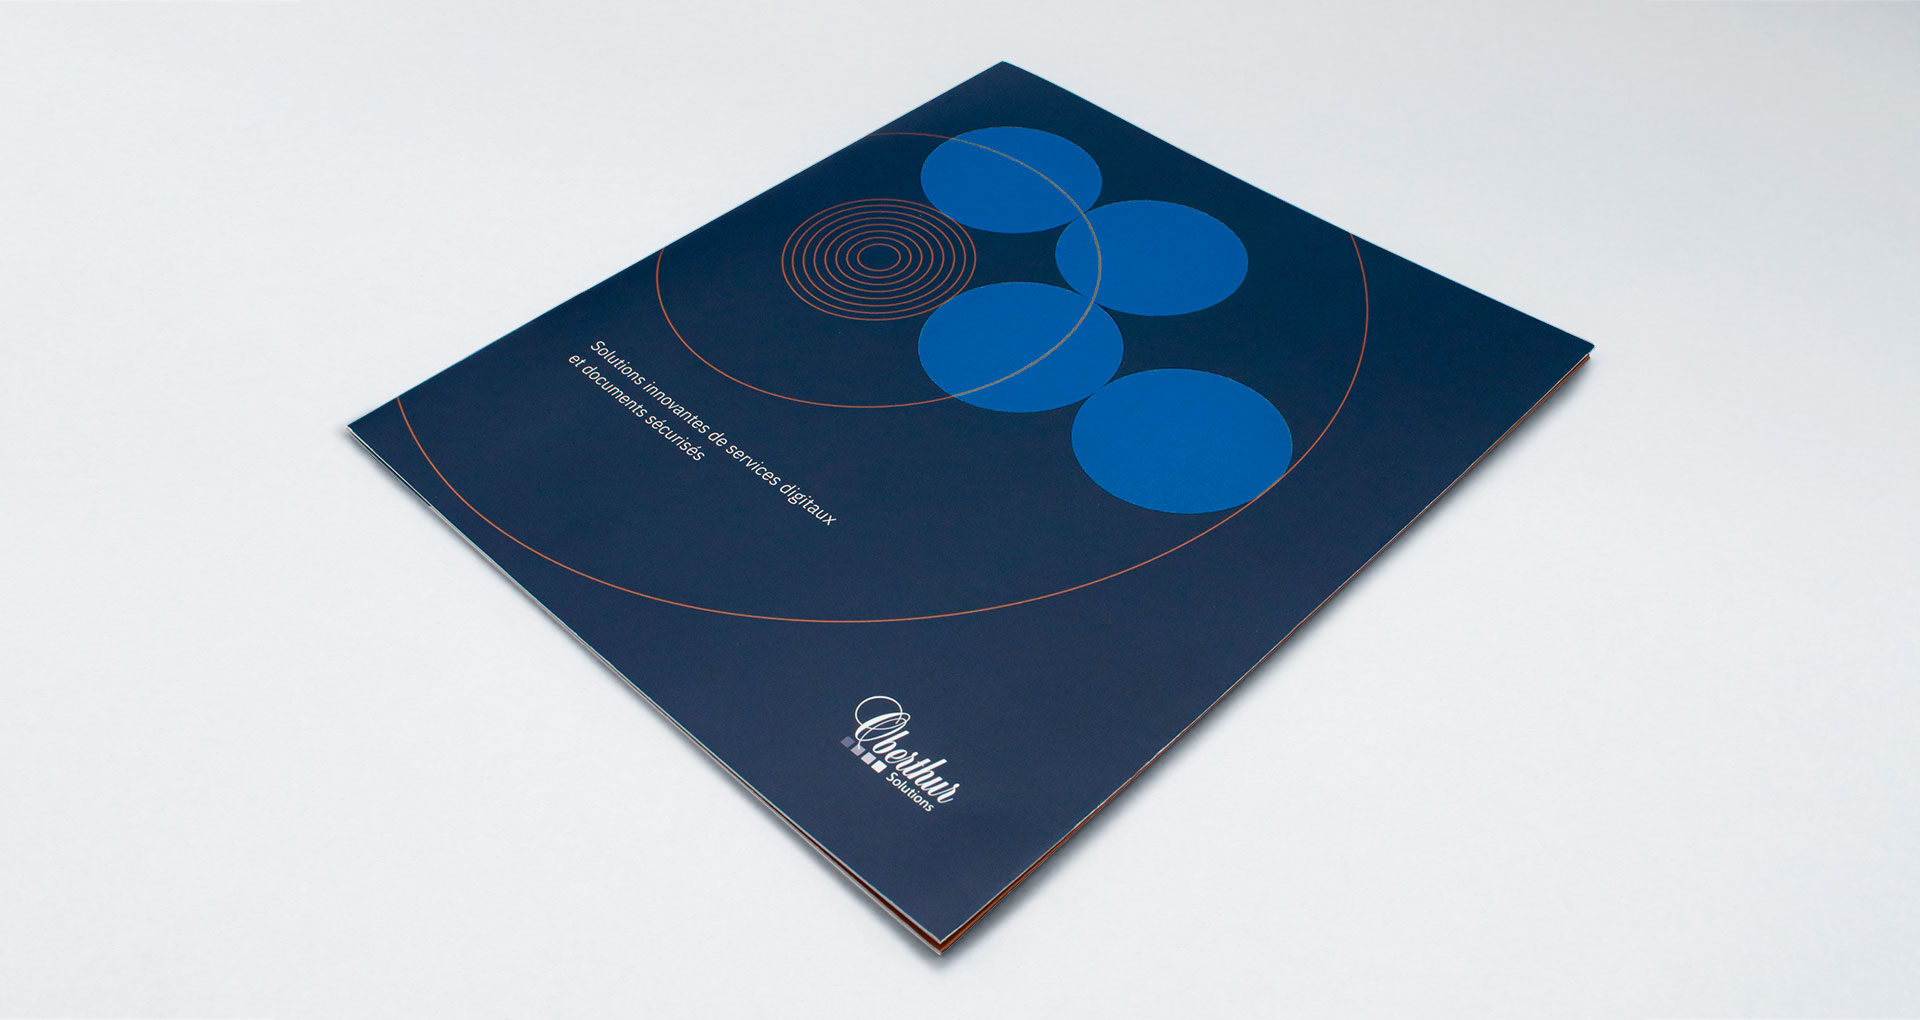 Direction Artistique brochure commerciale Oberthur Solutions